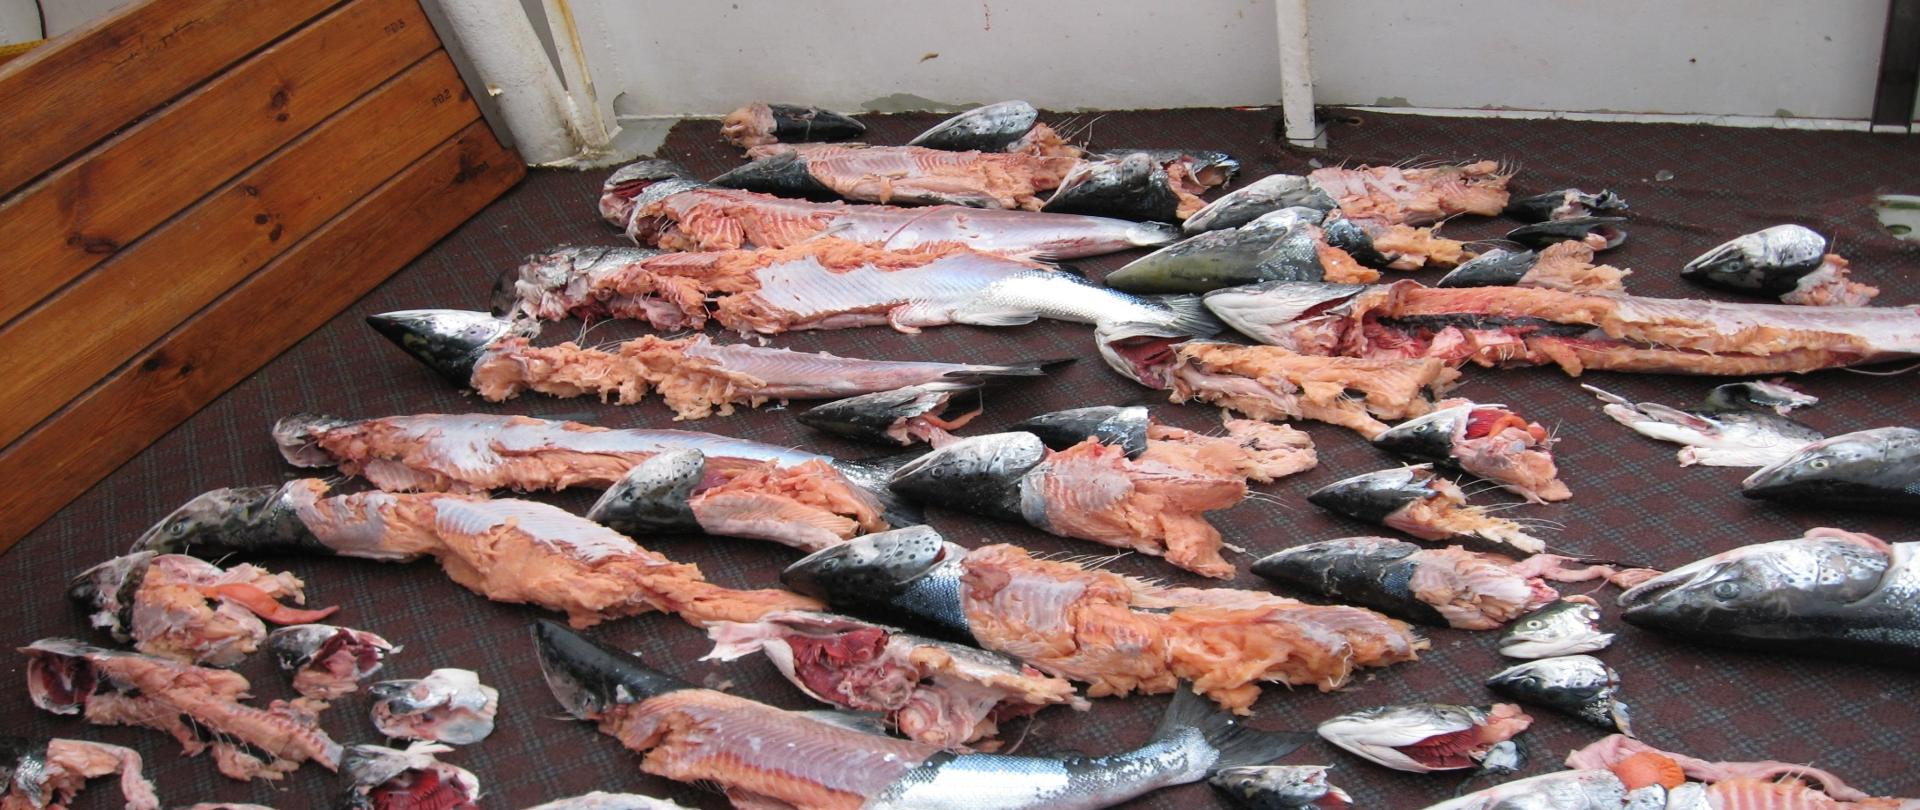 Ryby zniszczone przez foki